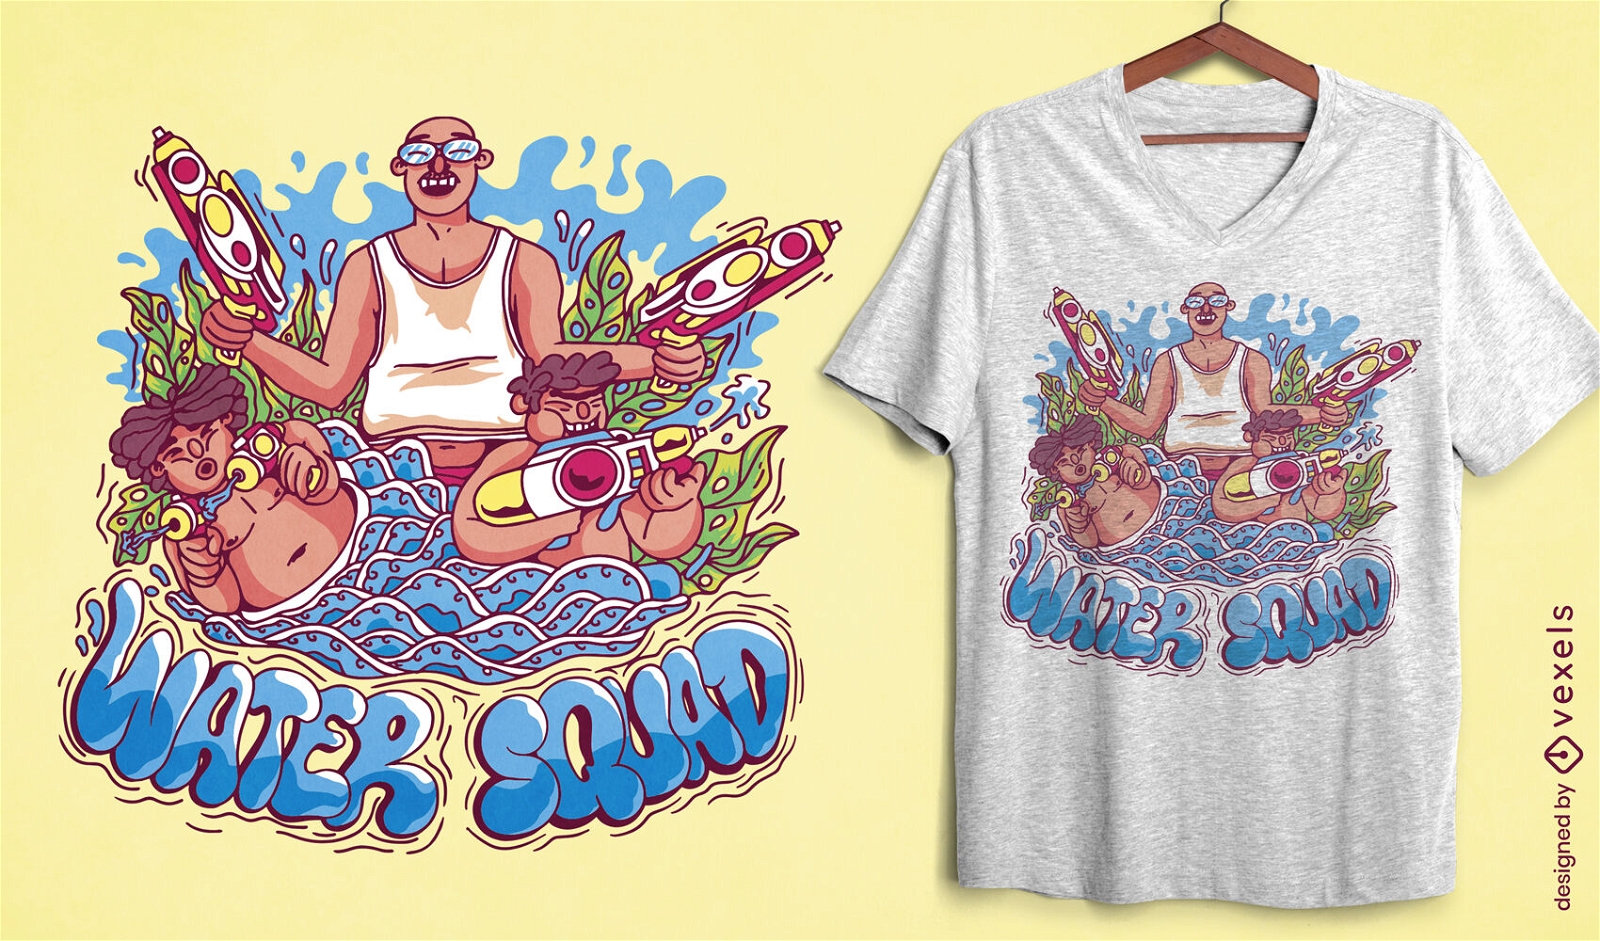 Songkran-Wasserfestival-T-Shirt-Design